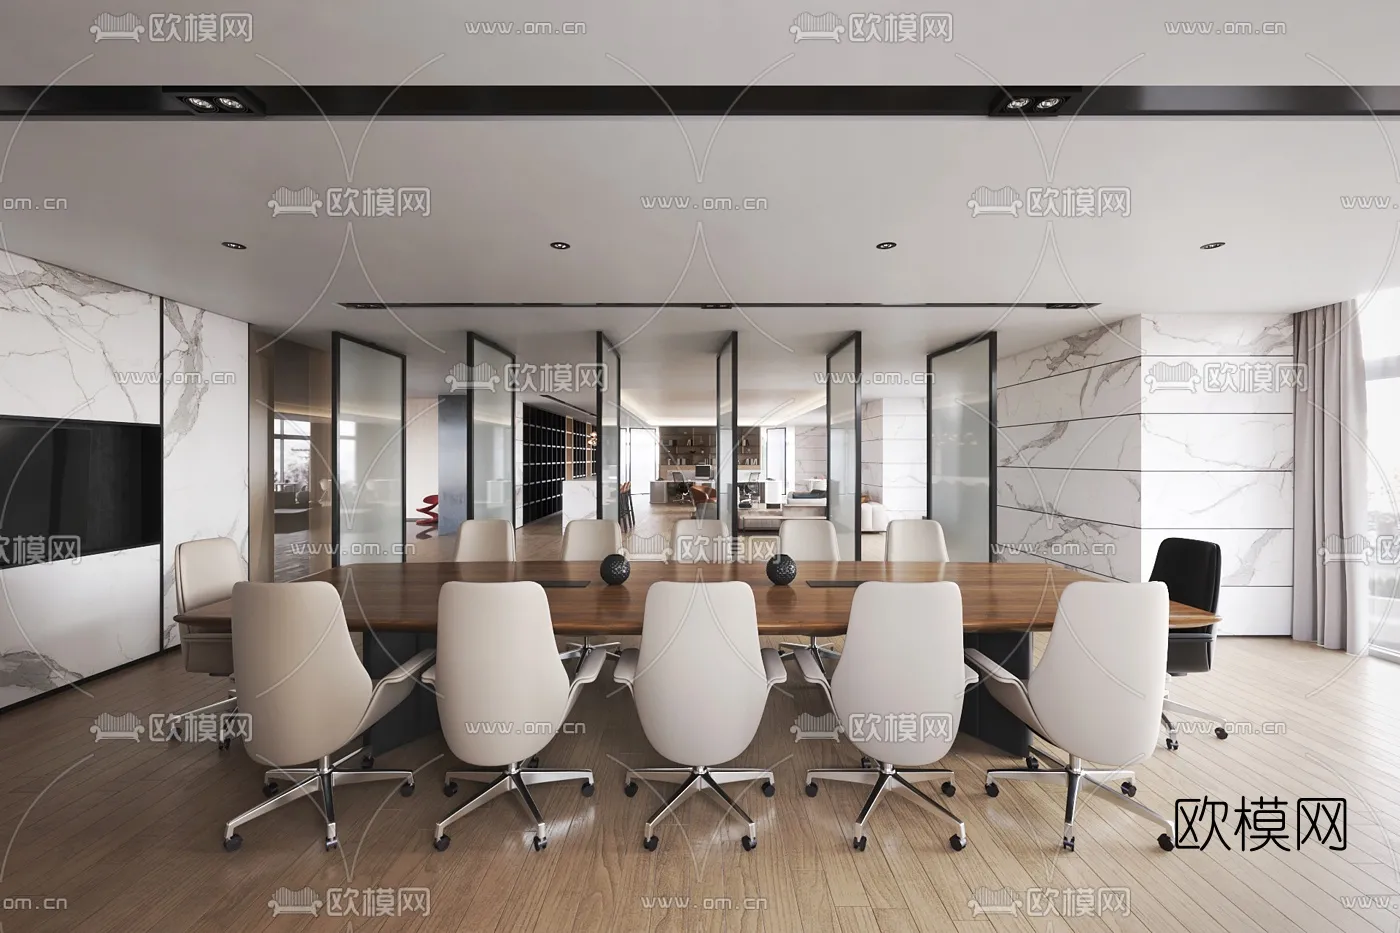 Meeting Room 3D Scenes – 1481